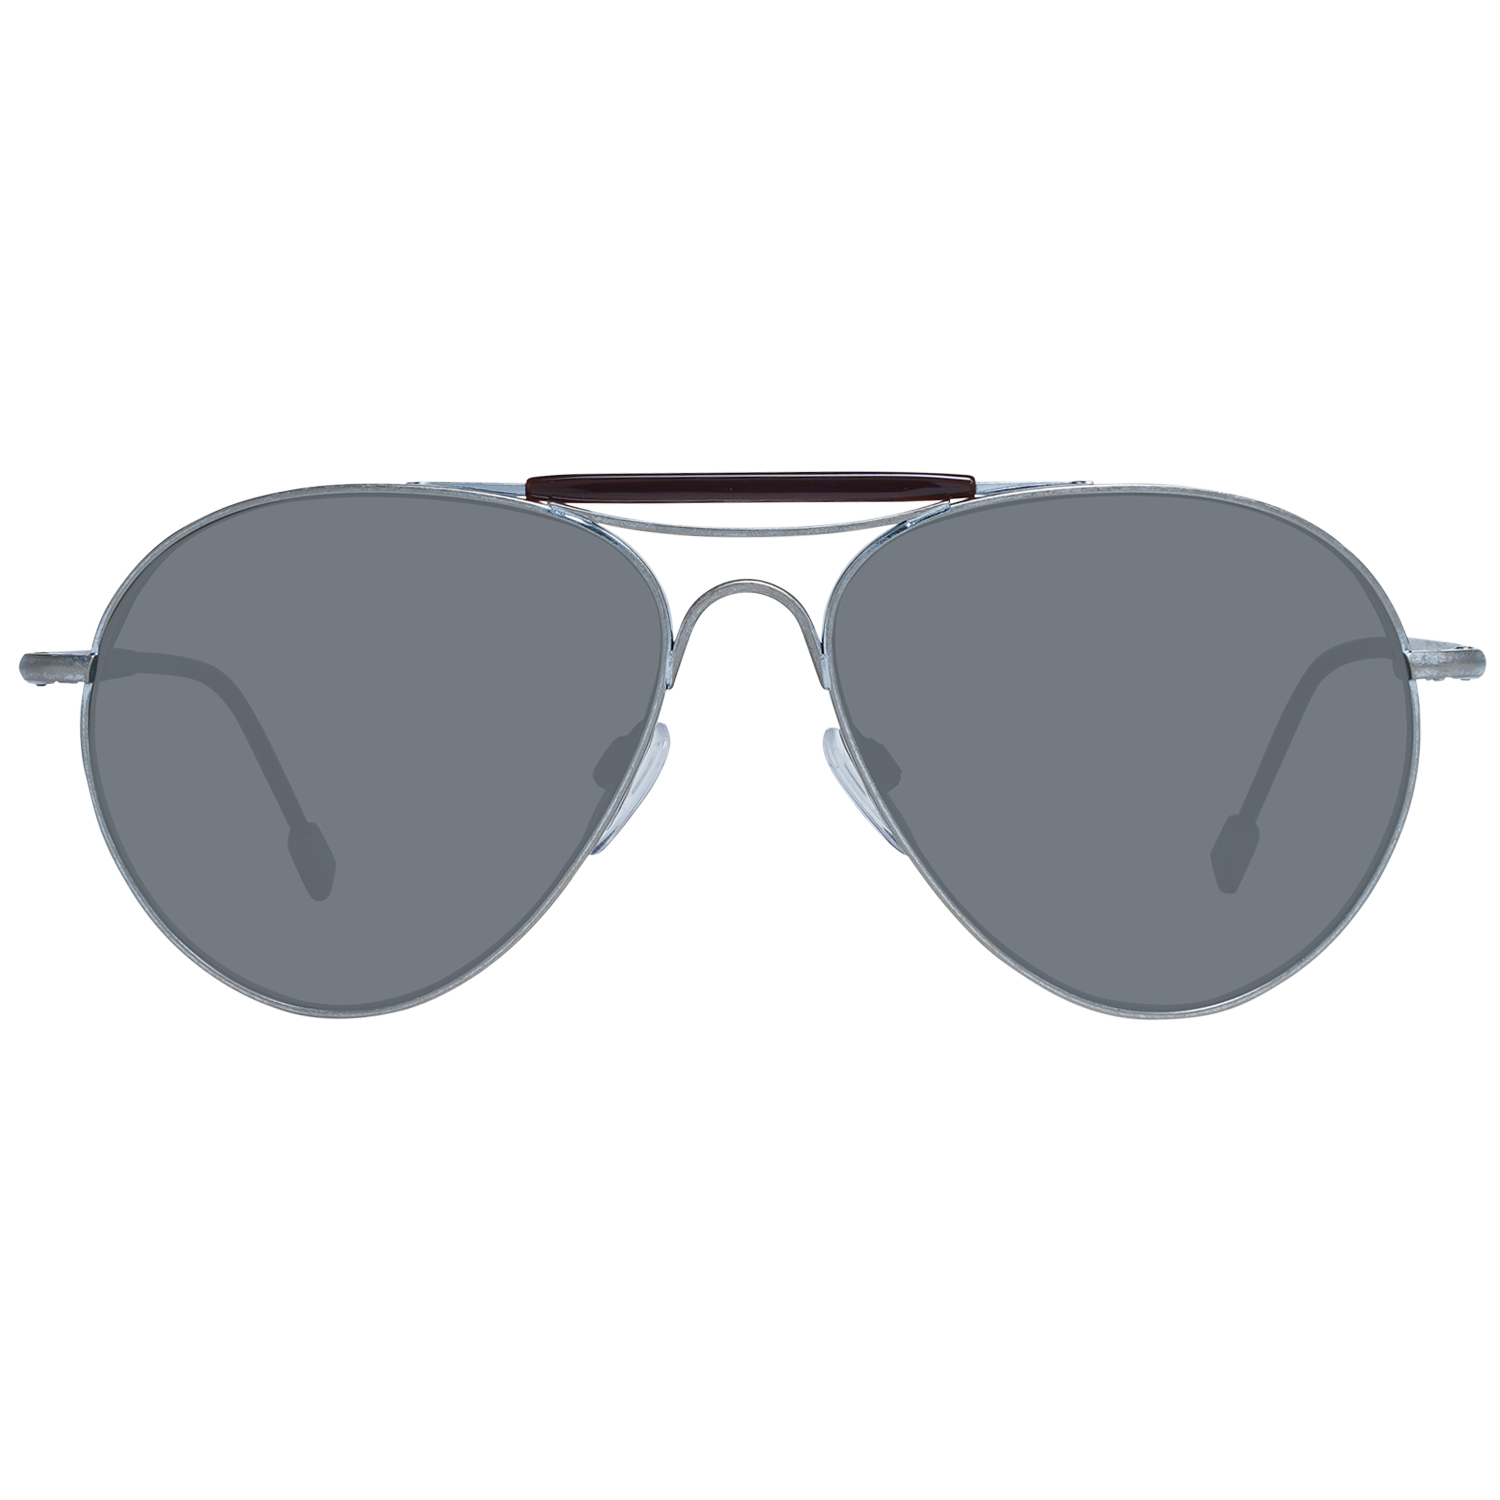 Zegna Couture Sunglasses Zegna Couture Sunglasses ZC0020 57 15A Titanium Eyeglasses Eyewear UK USA Australia 